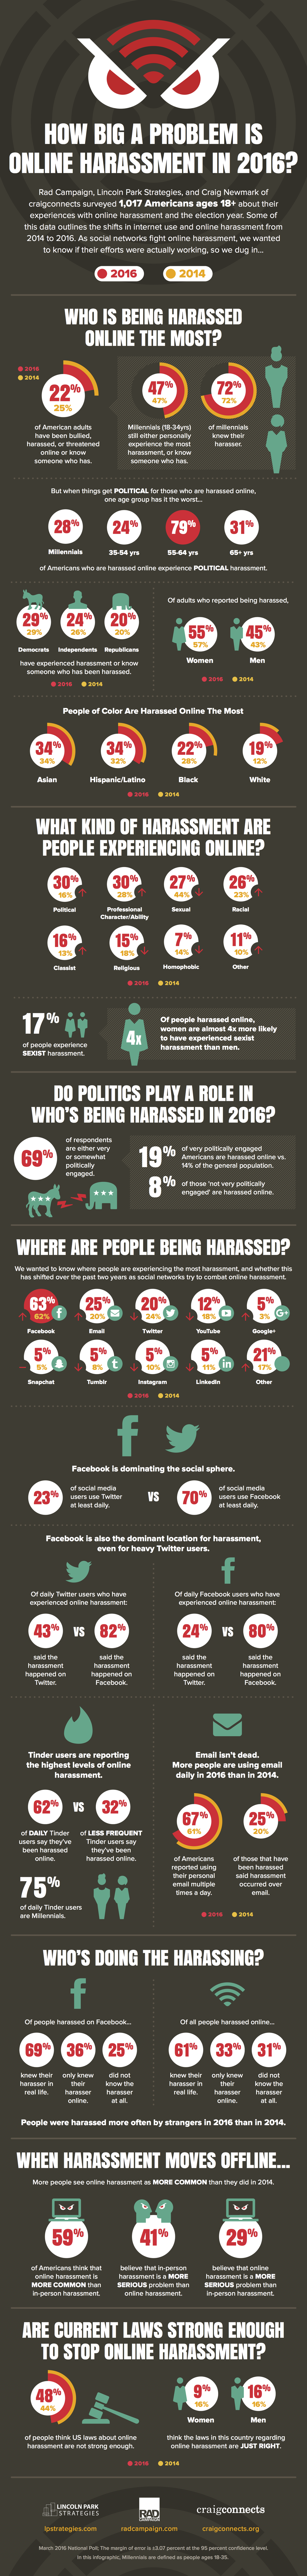 2016 Online Harassment Full